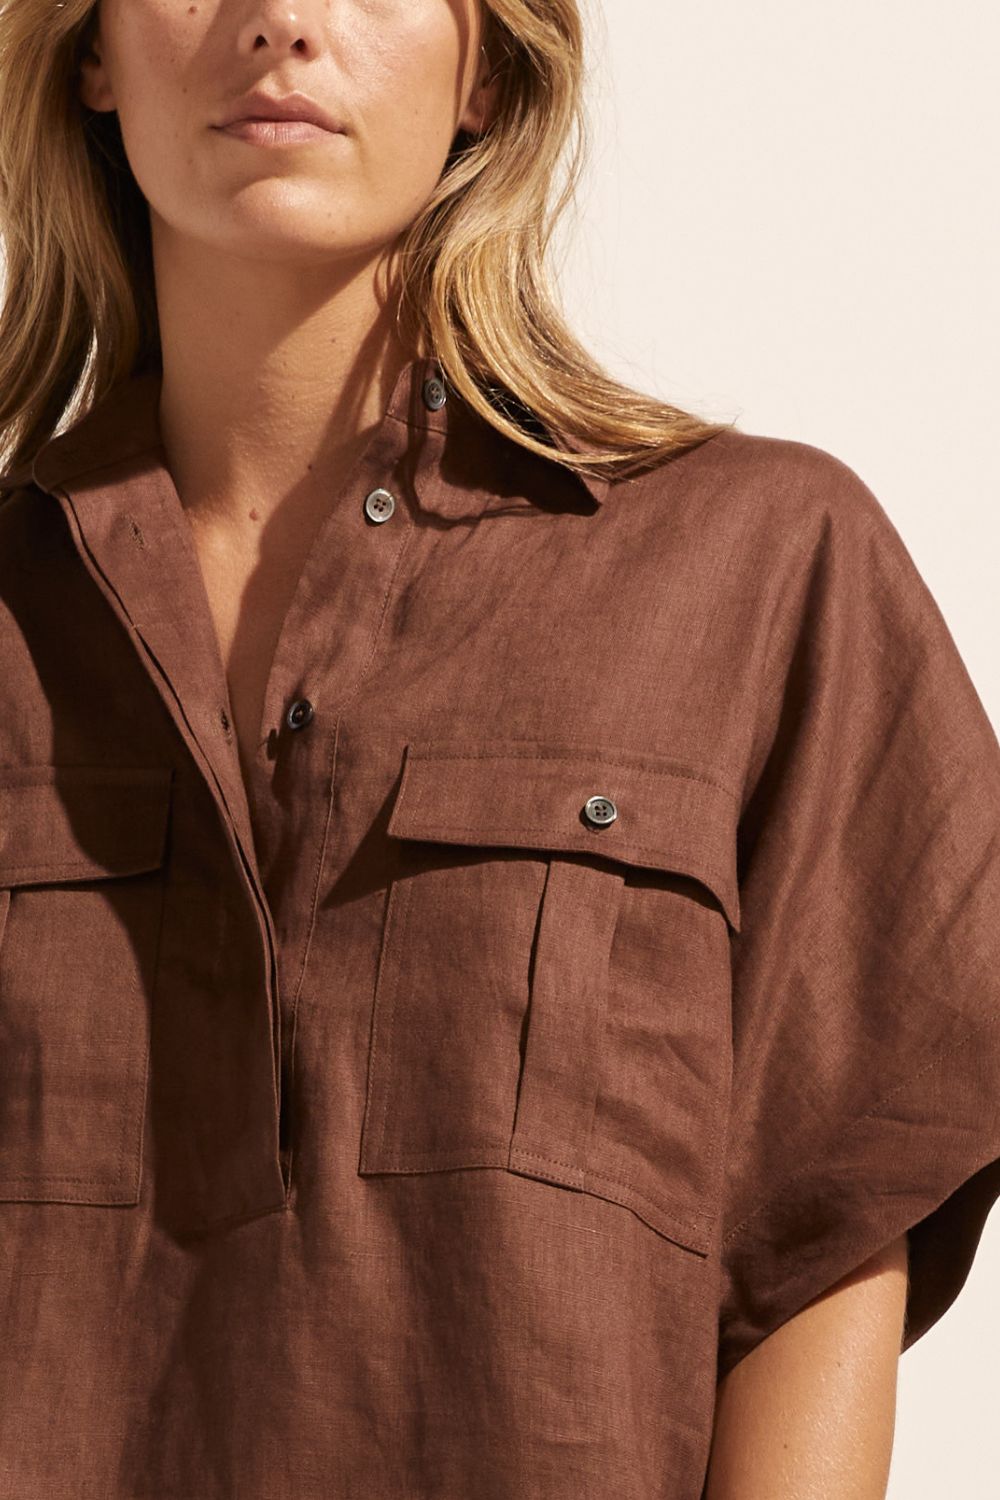 brown, shirt, oversized pockets, short sleeve, linen,  close up view